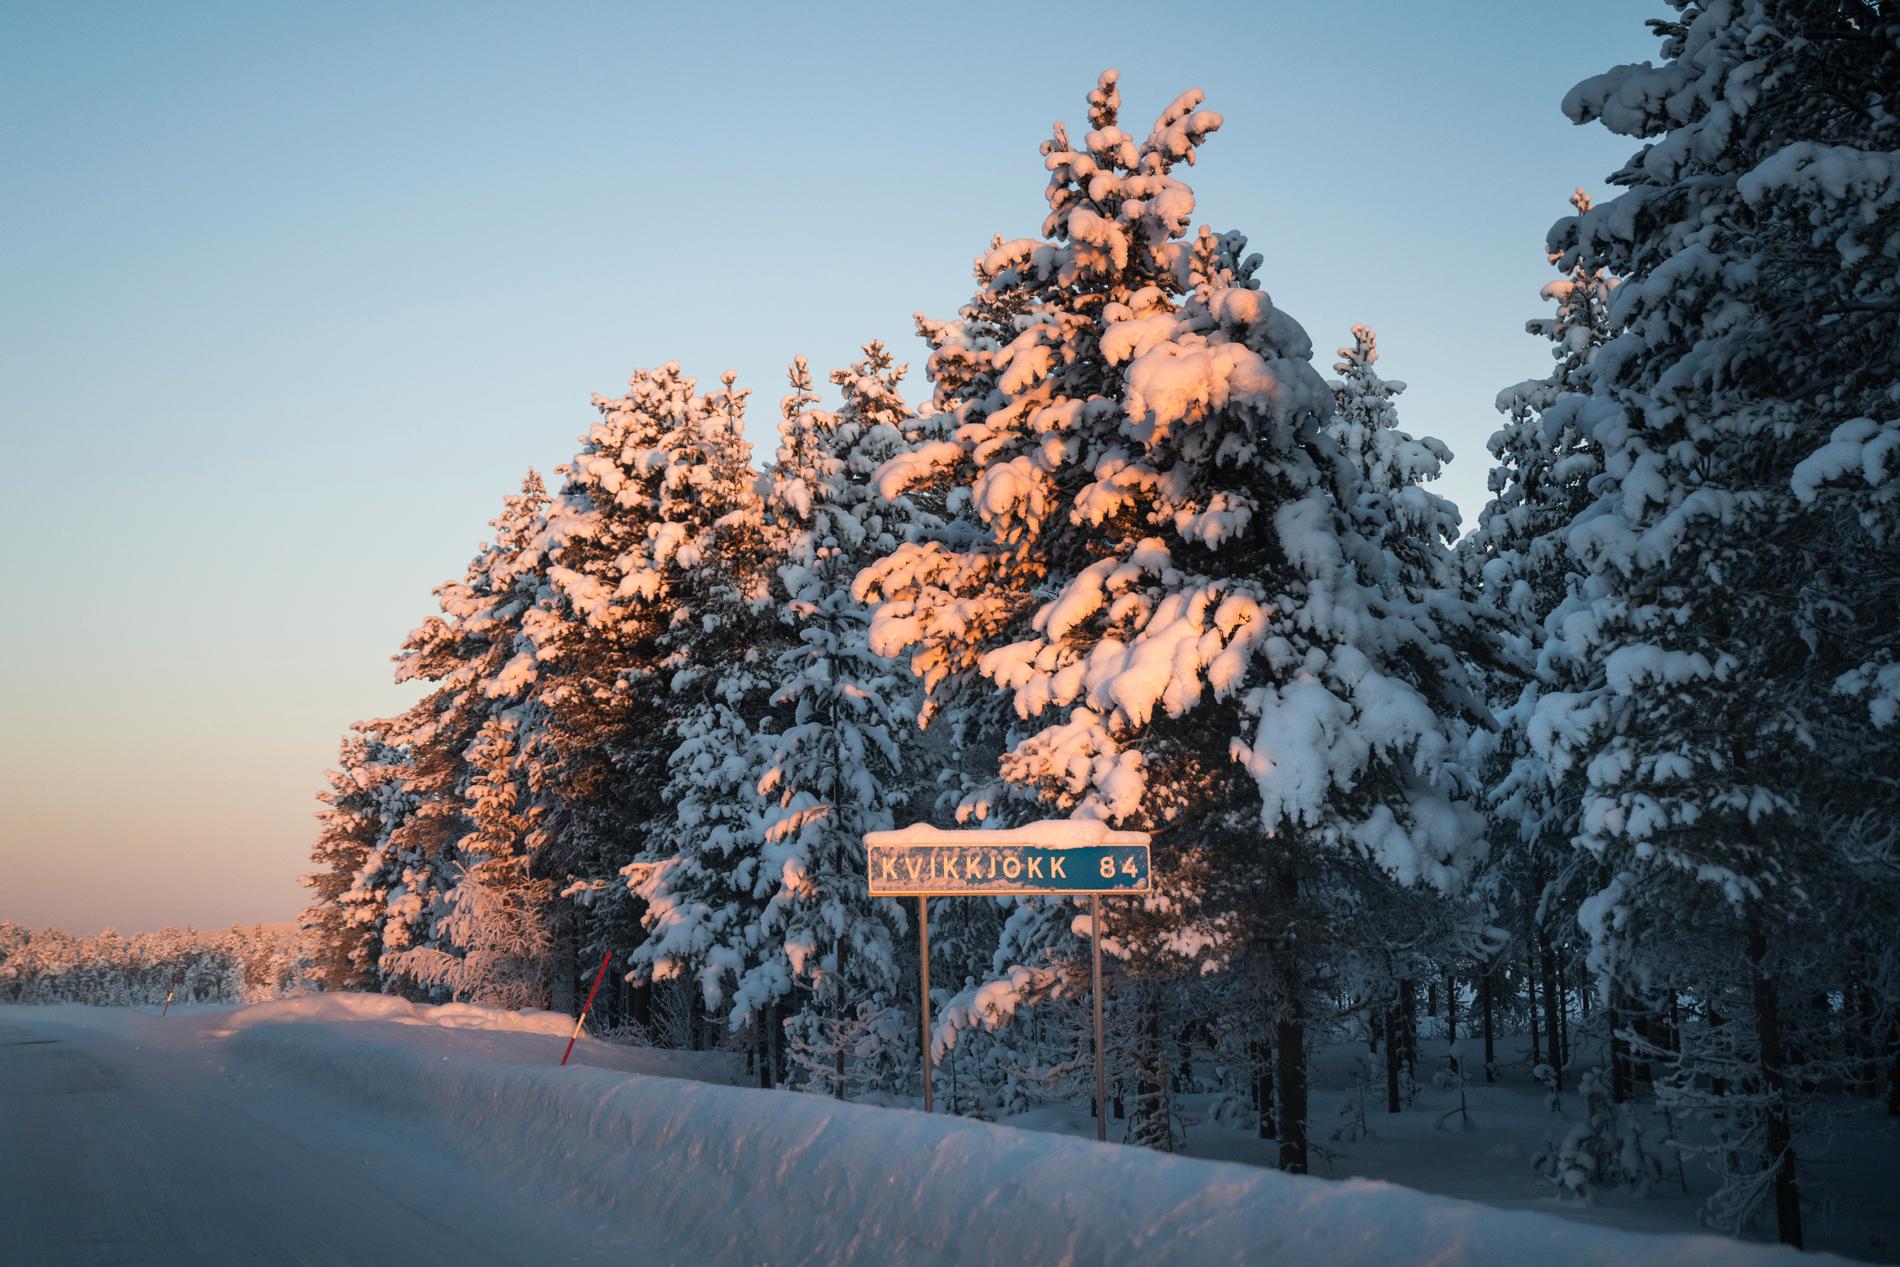 Uppe i nordligaste delarna av Sverige har det uppmätts temperaturer så låga som –30 och –40 grader. 